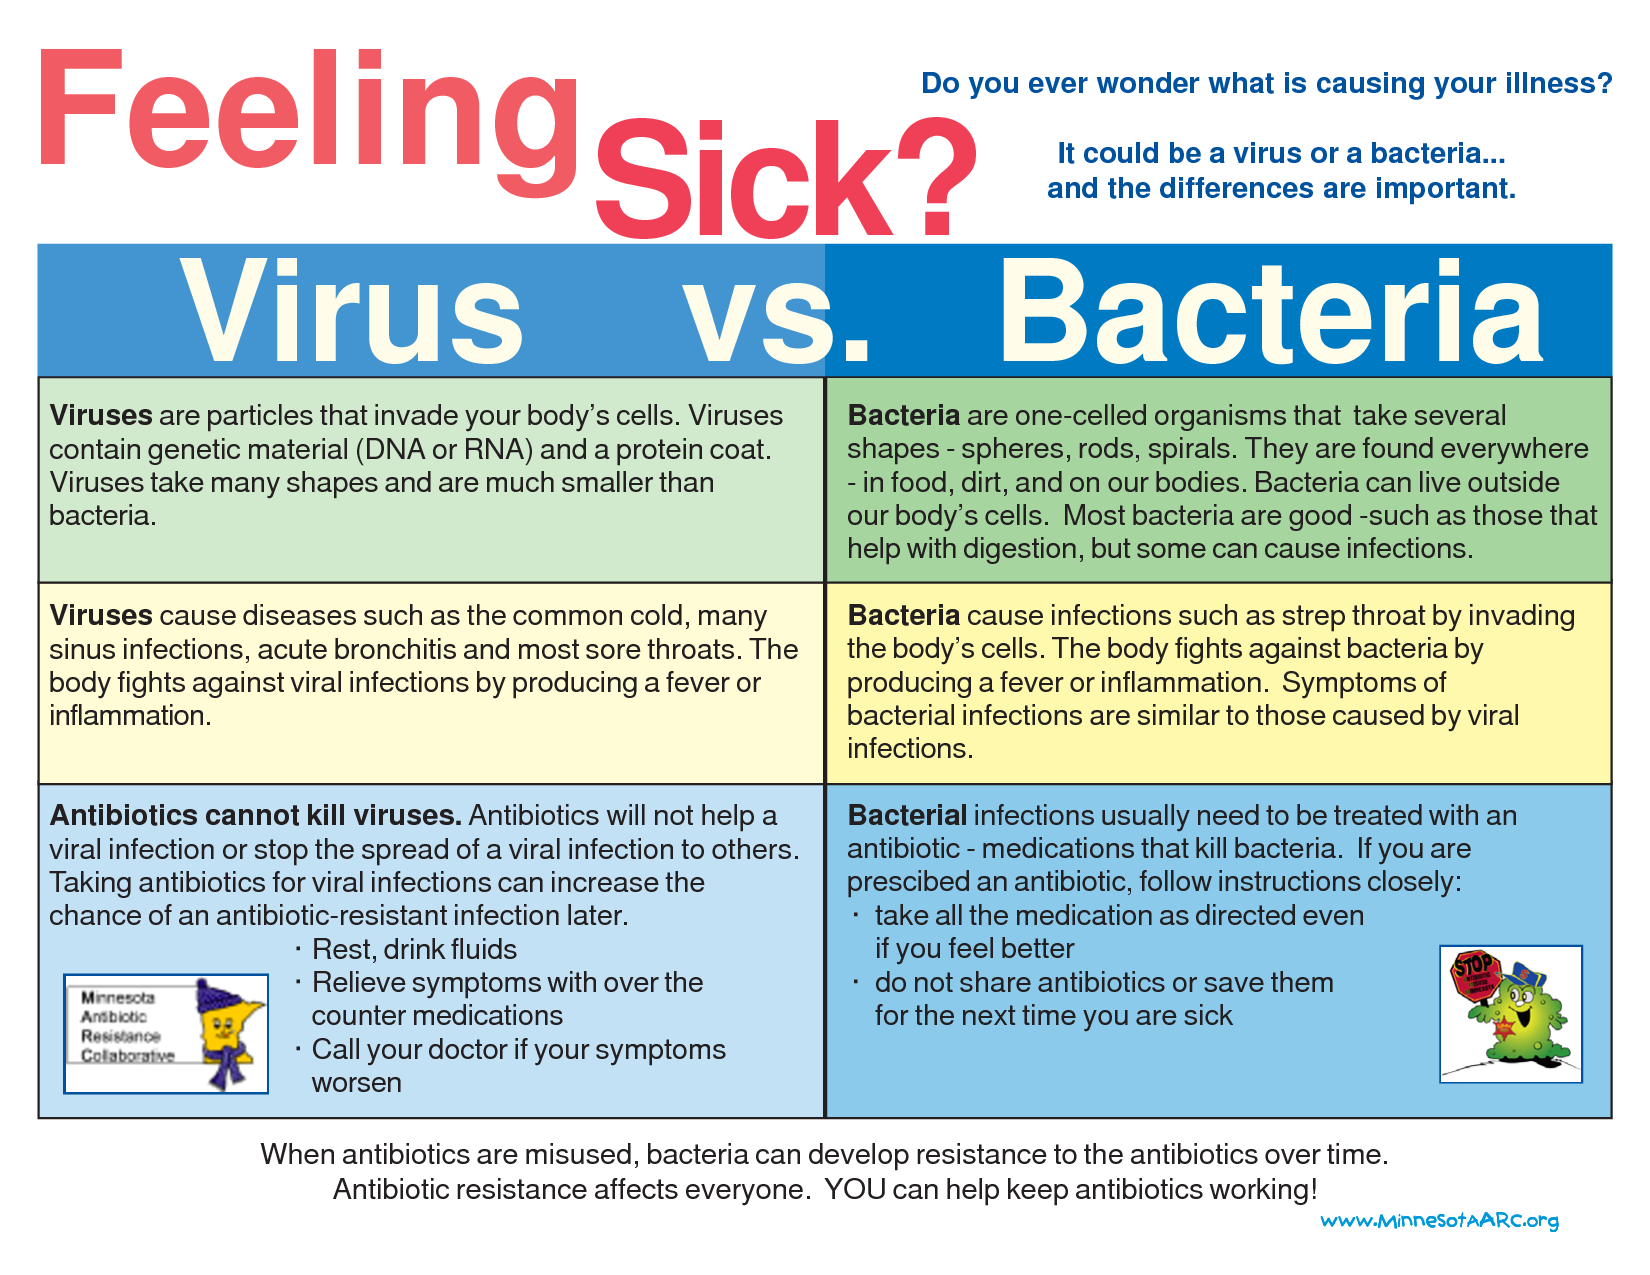 Bacteria VS. Viruses